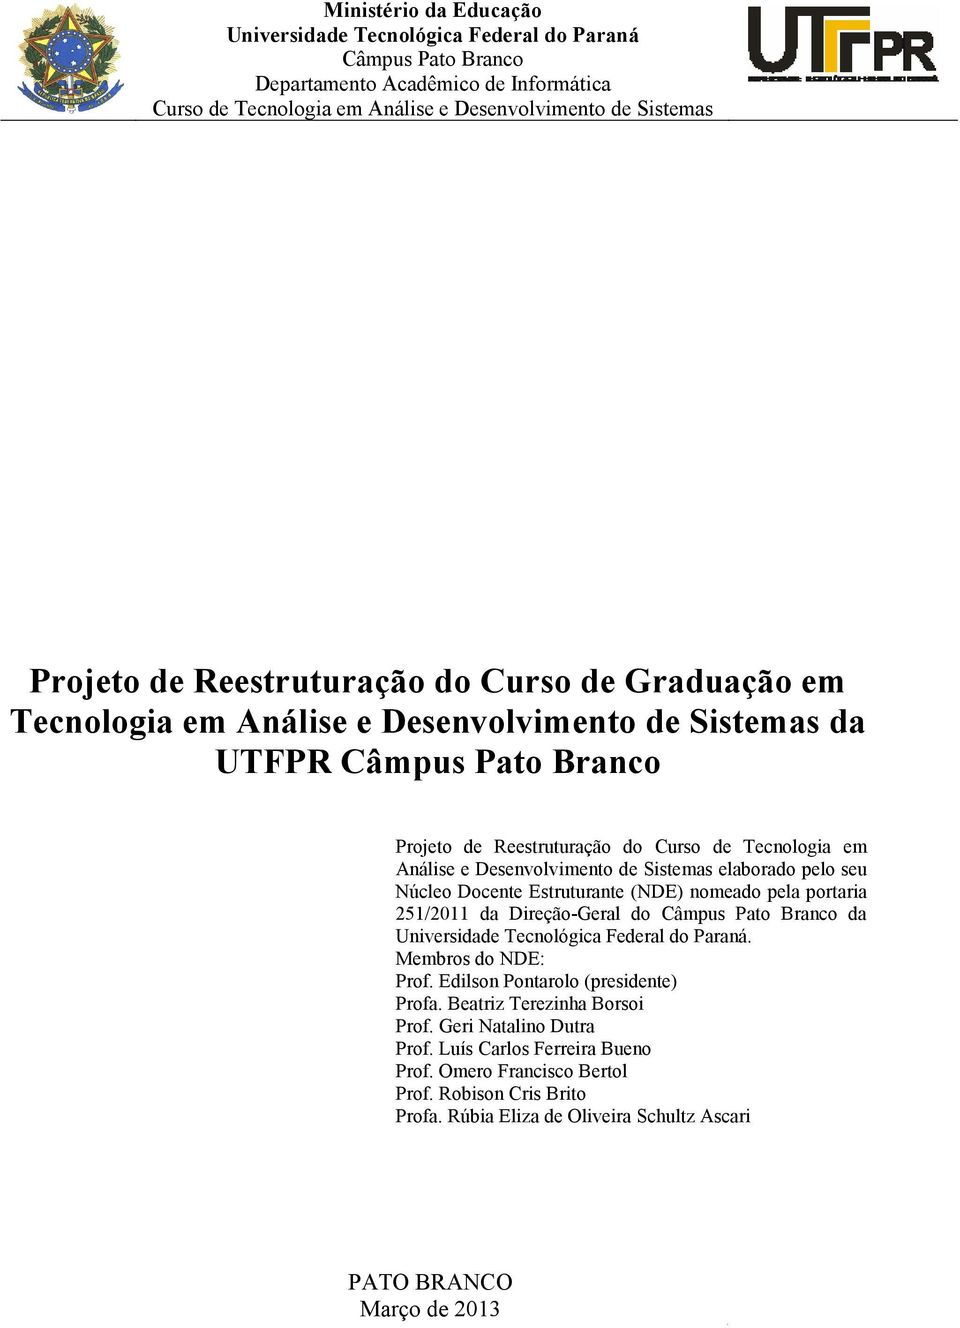 Desenvolvimento de Sistemas elaborado pelo seu Núcleo Docente Estruturante (NDE) nomeado pela portaria 251/2011 da Direção-Geral do Câmpus Pato Branco da Universidade Tecnológica Federal do Paraná.